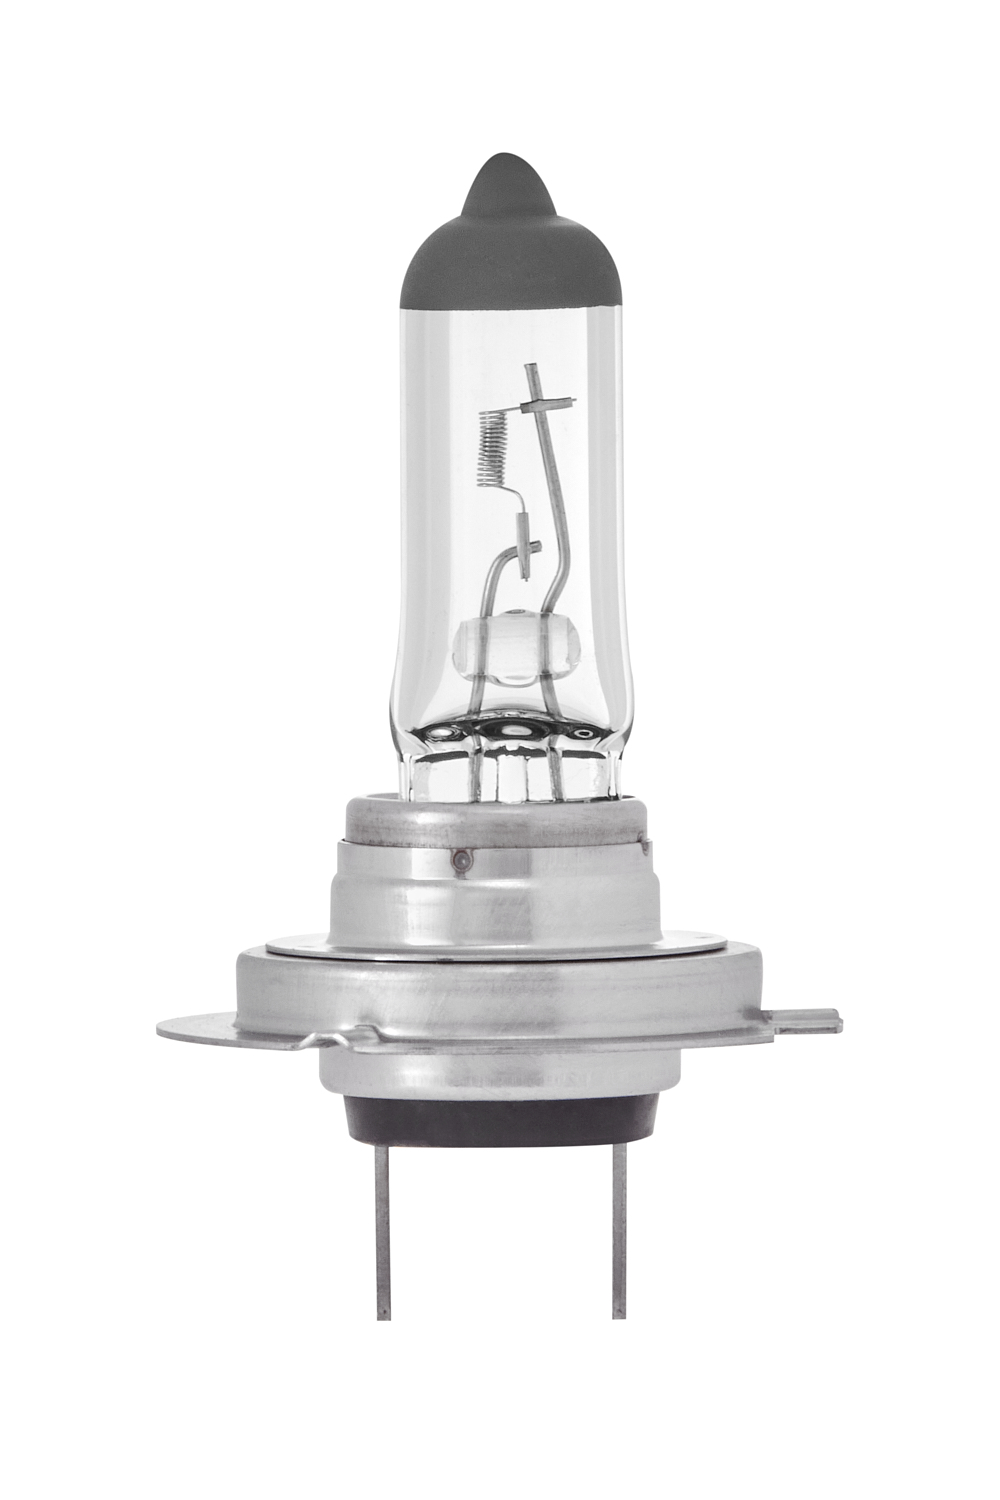 H7 Headlamp Bulb 12V 55W Px26d, R477